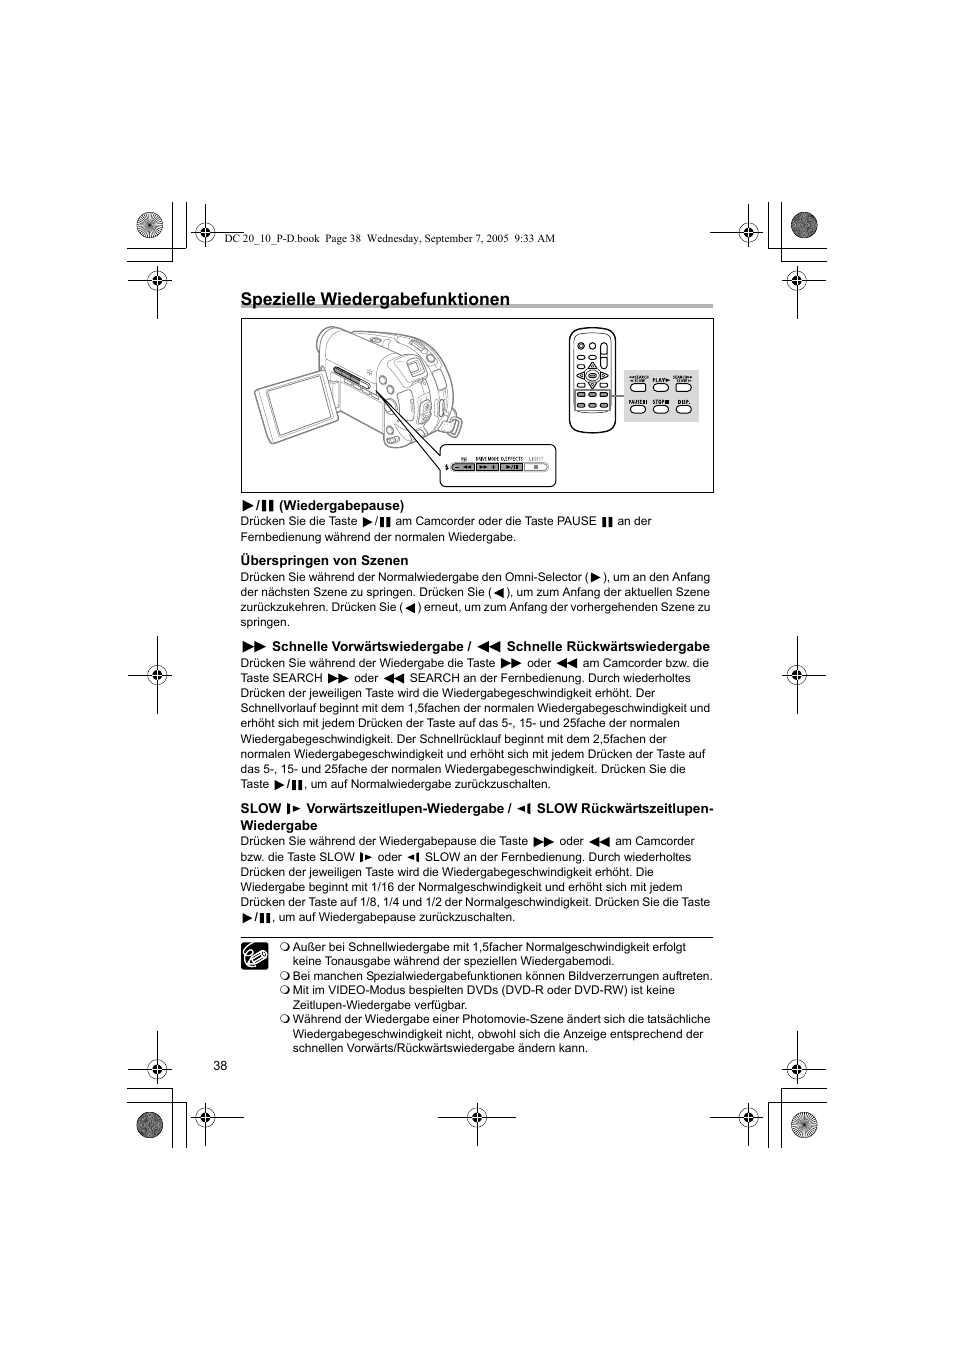 Spezielle wiedergabefunktionen | Canon DC10 Benutzerhandbuch | Seite 38 / 150